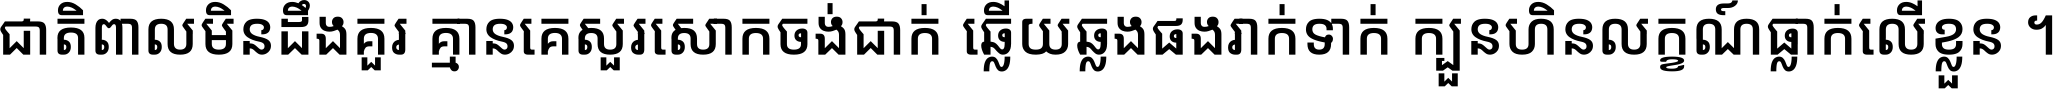 Noto Sans Khmer UI Condensed Medium